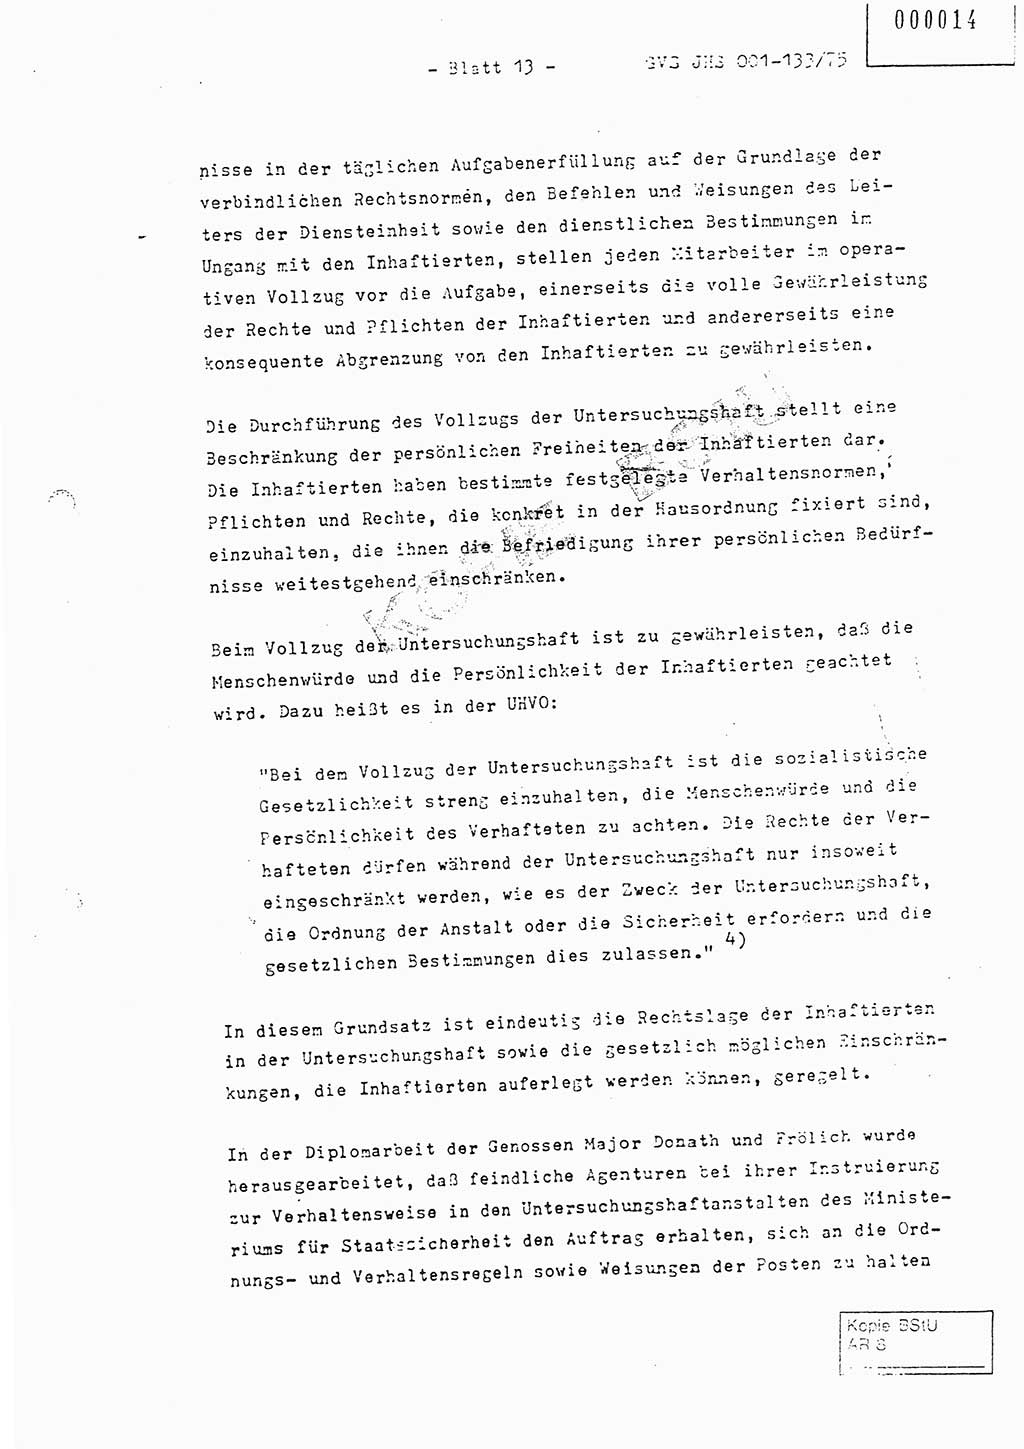 Fachschulabschlußarbeit Major Werner Braun (Abt. ⅩⅣ), Hauptmann Klaus Zeiß (Abt. ⅩⅣ), Ministerium für Staatssicherheit (MfS) [Deutsche Demokratische Republik (DDR)], Juristische Hochschule (JHS), Geheime Verschlußsache (GVS) 001-133/75, Potsdam 1976, Blatt 13 (FS-Abschl.-Arb. MfS DDR JHS GVS 001-133/75 1976, Bl. 13)